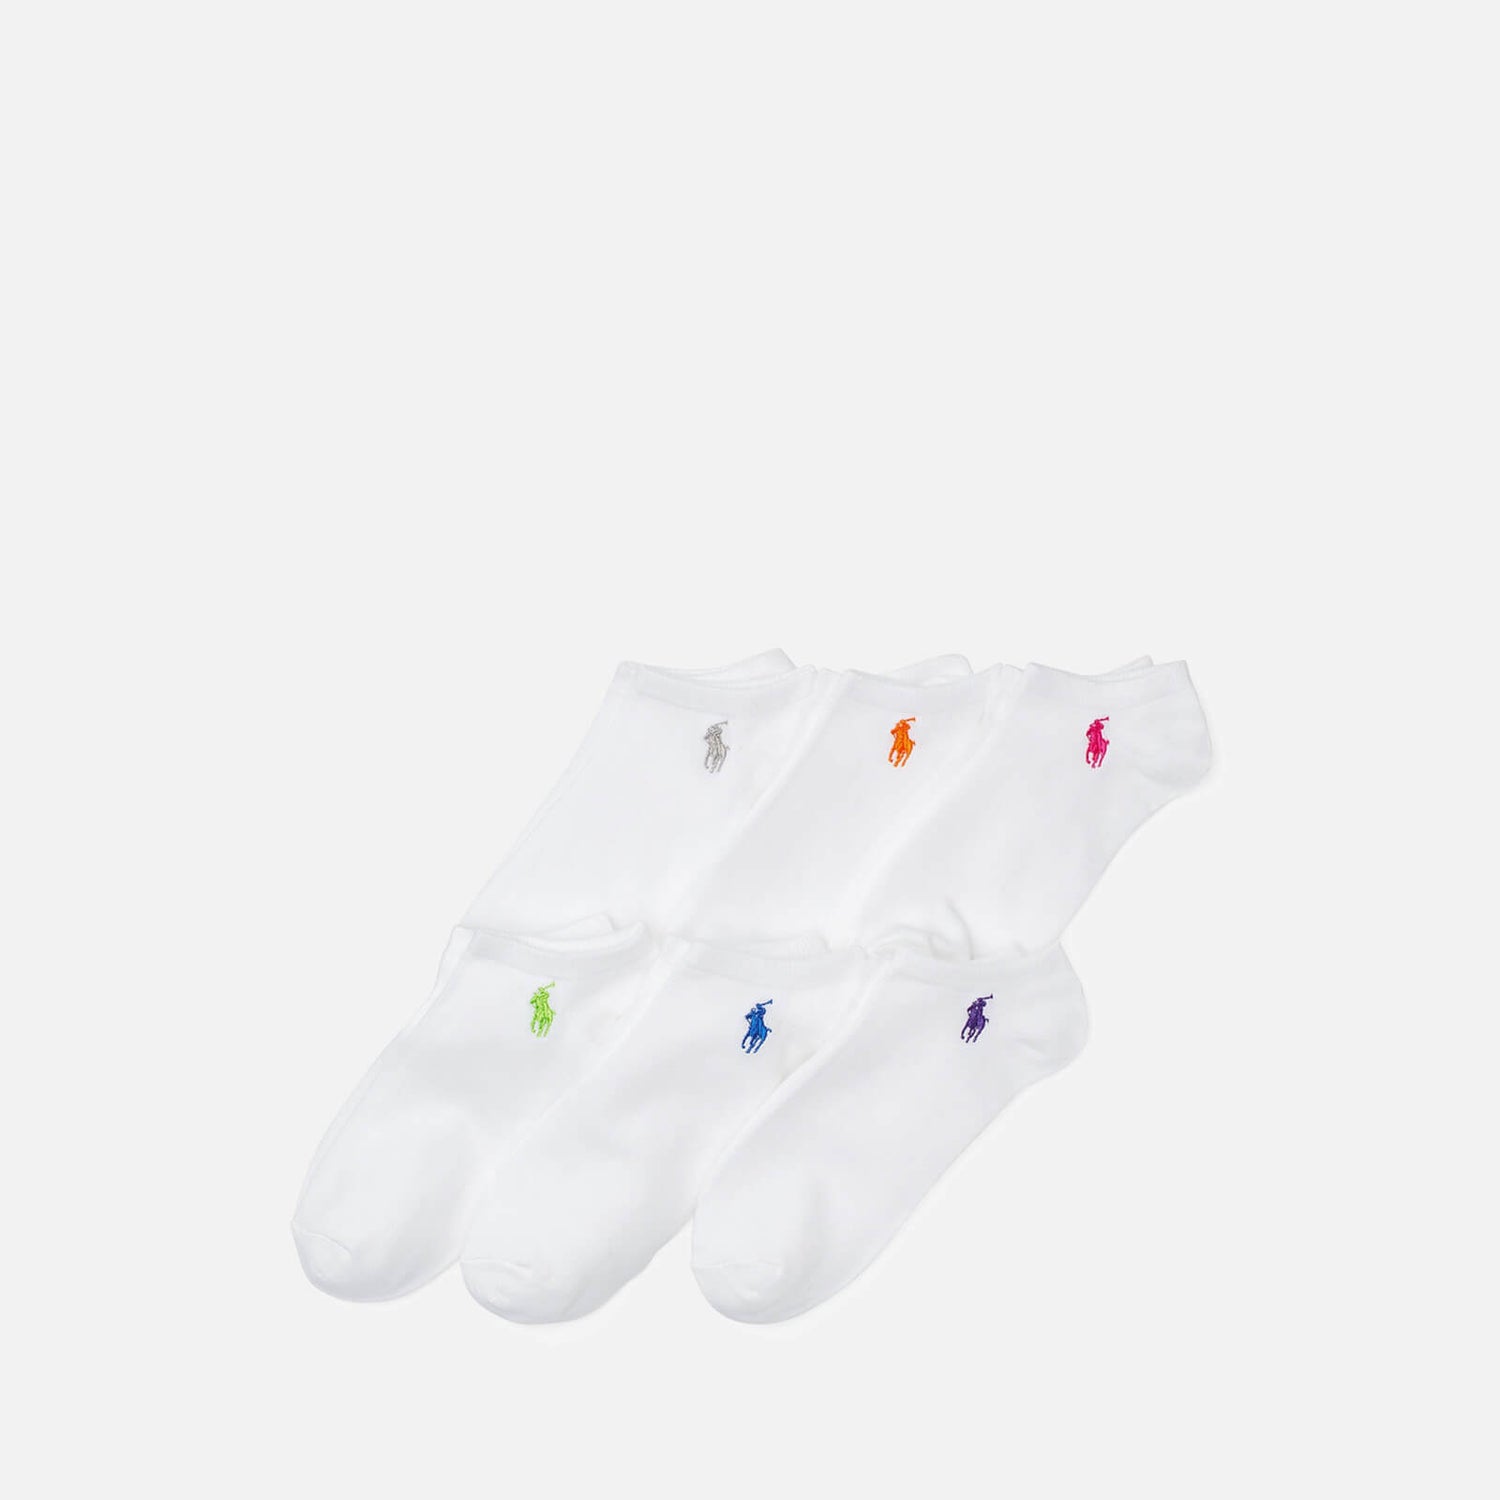 Polo Ralph Lauren Women's Flt Lw Cut Socks 6 Pack - 150 White Assorted